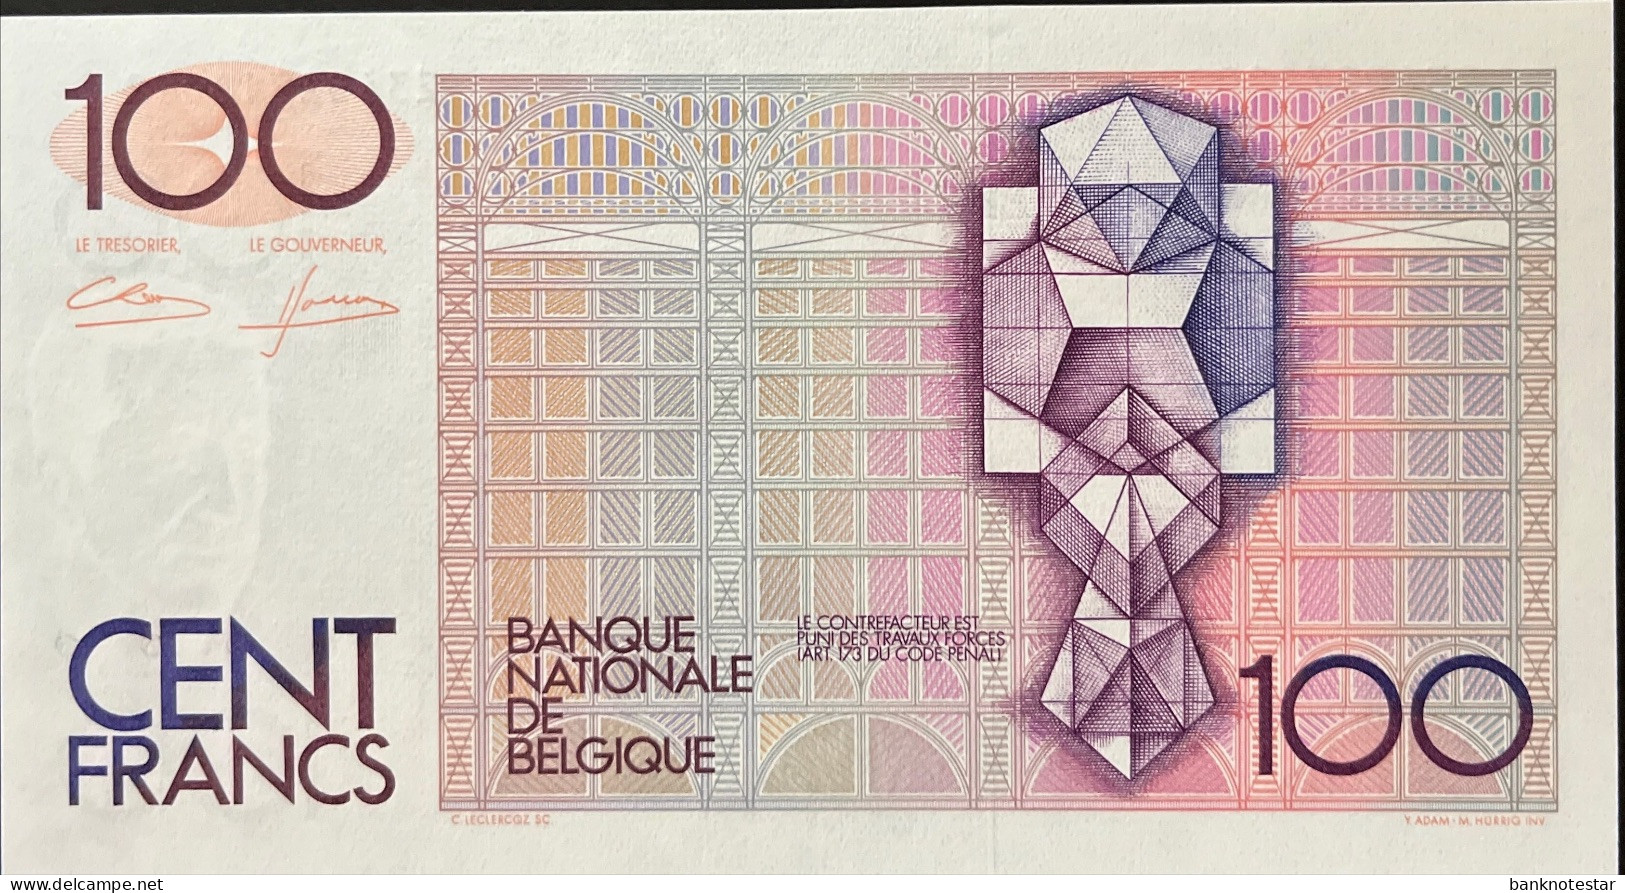 Belgium 100 Francs, P-142 (1982) - UNC - Signature 4+12 - 100 Francs